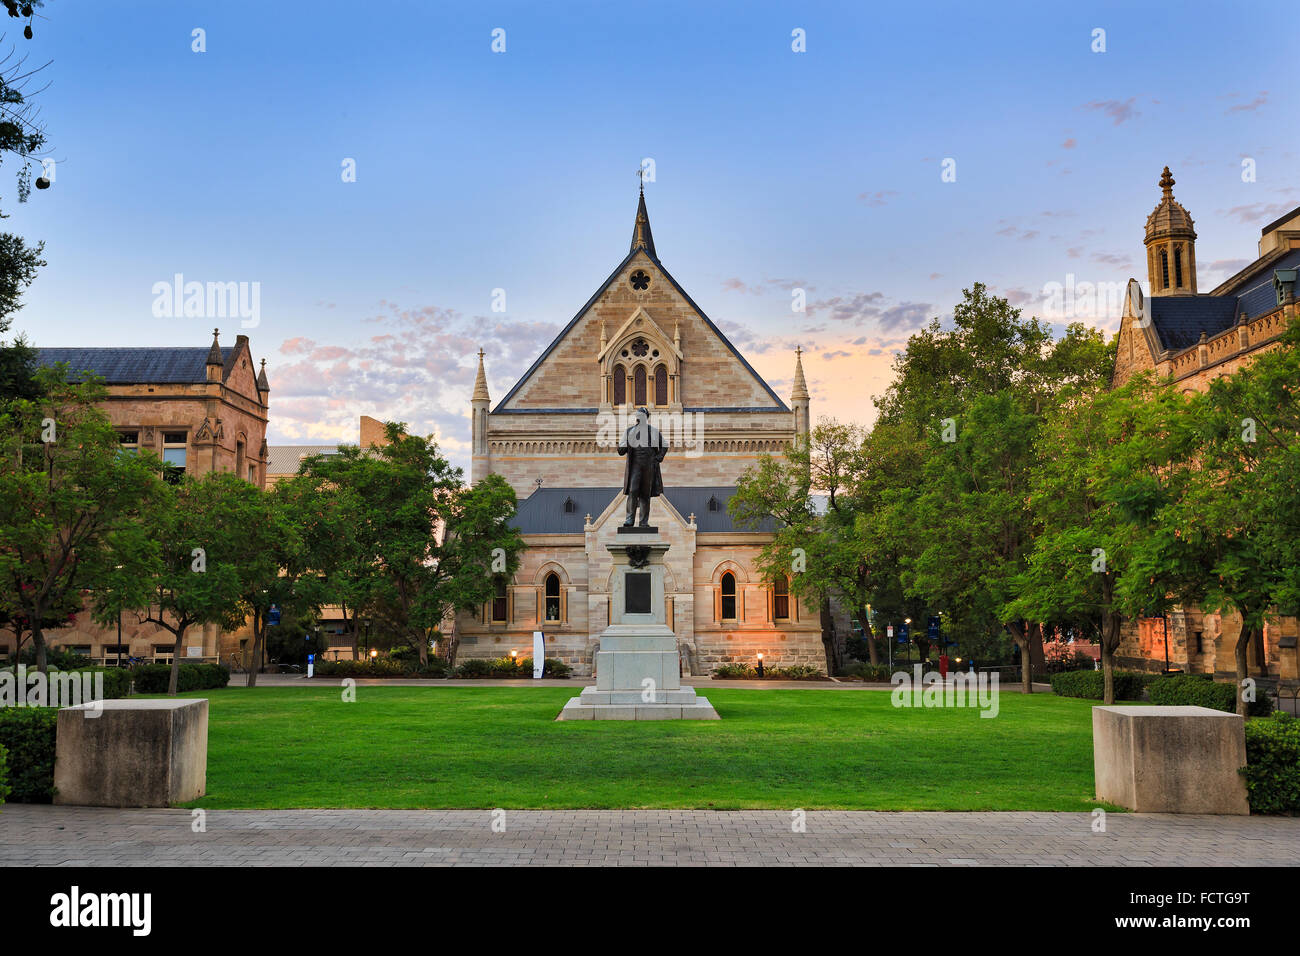 Façade de l'édifice gothique classique et monument statue de l'Université d'Adélaïde en Australie du Sud Banque D'Images